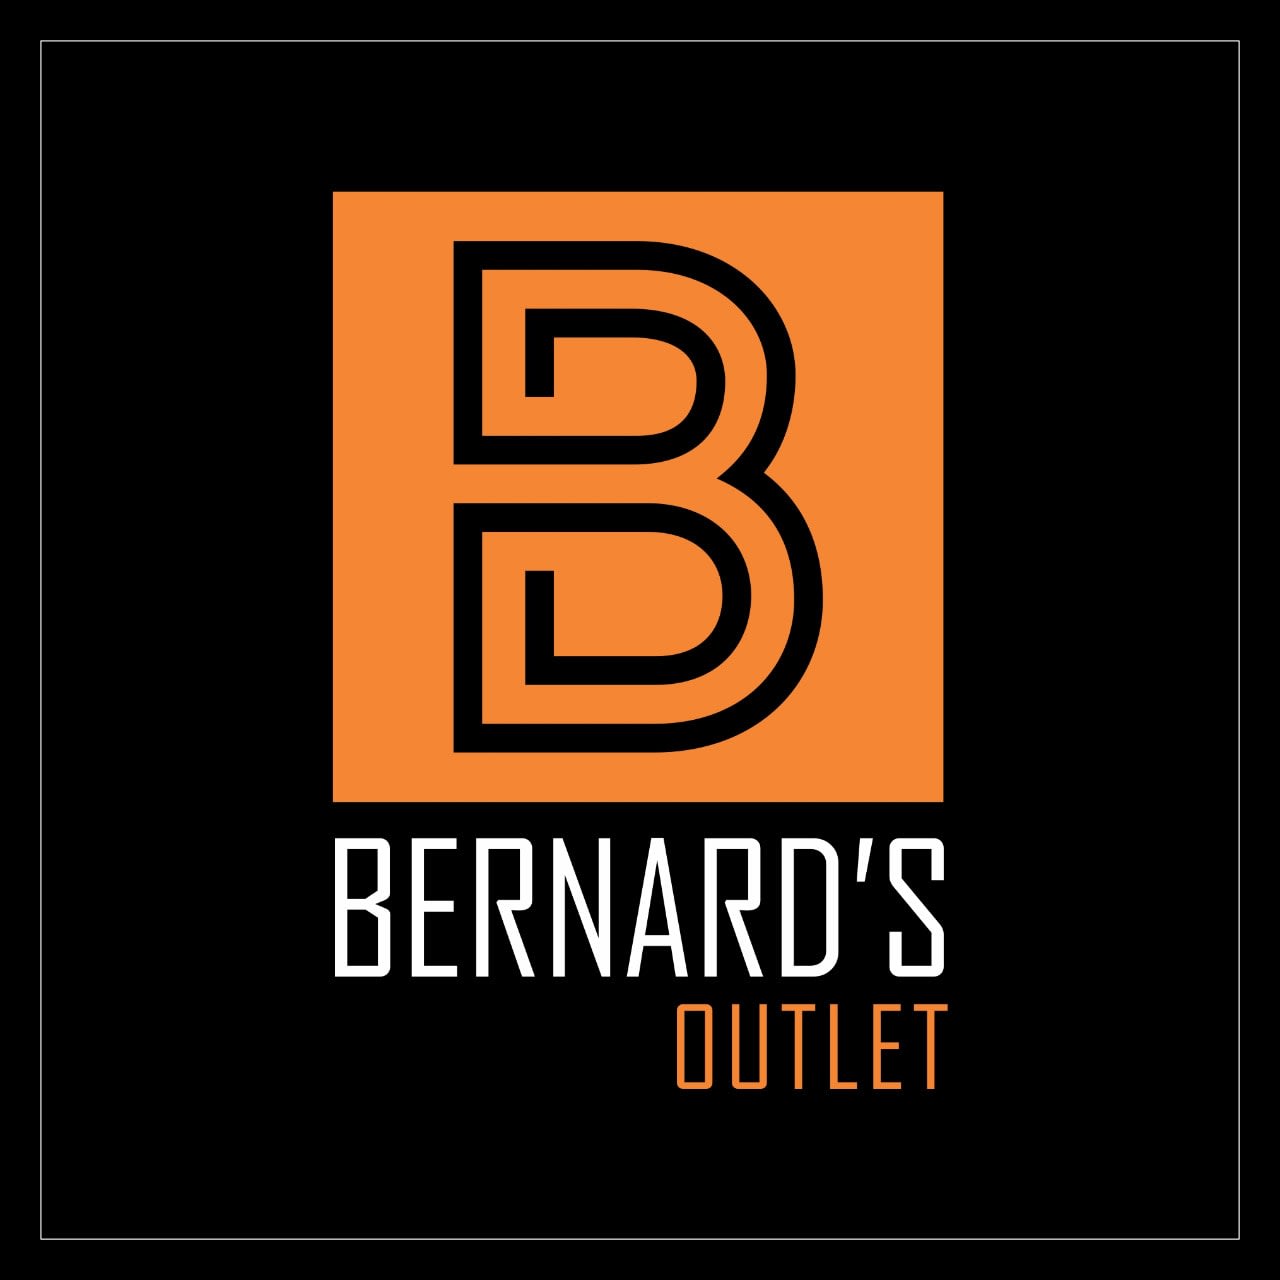 Bernard's Outlet